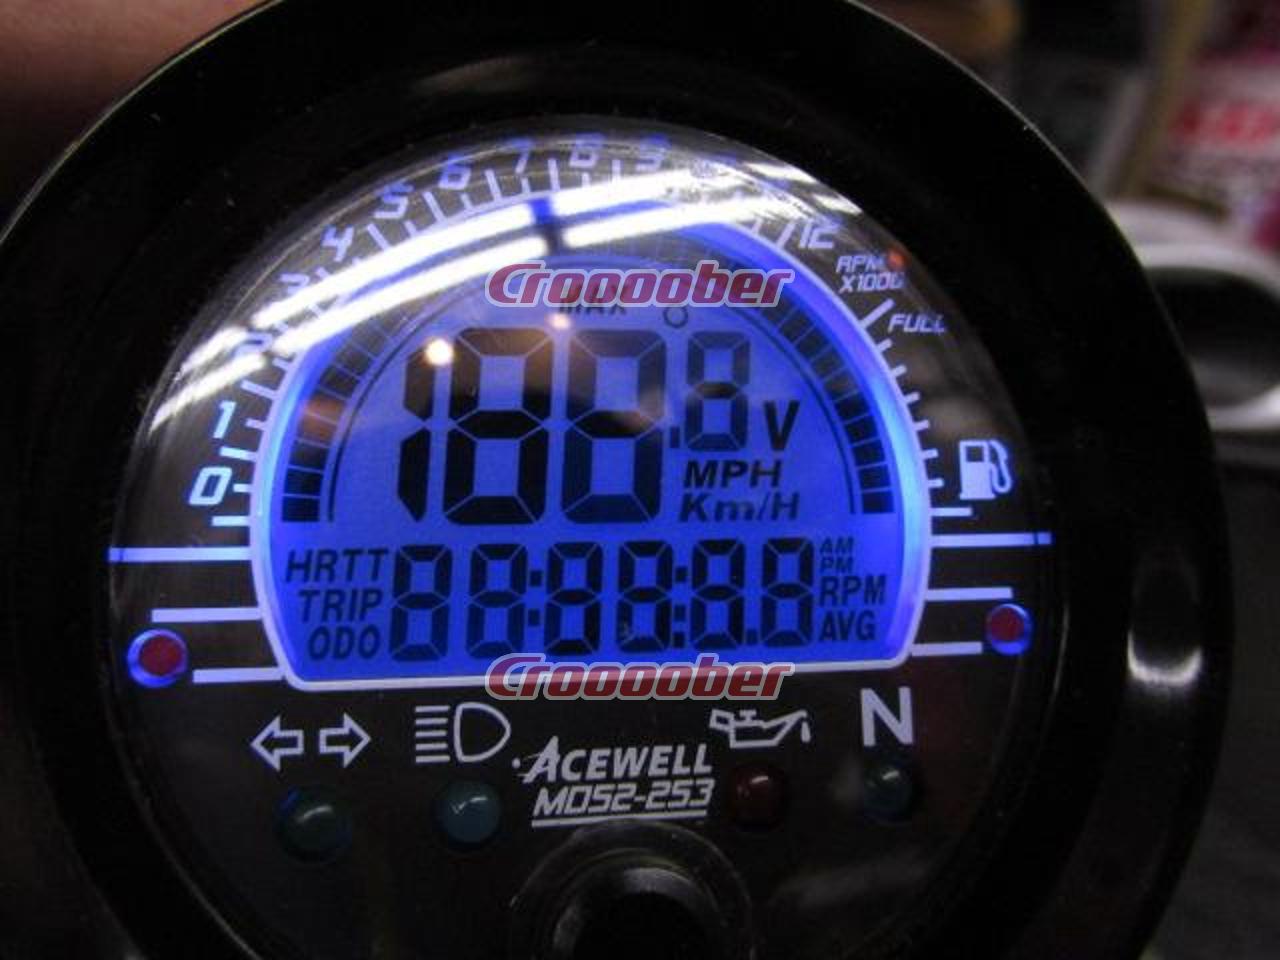 ACEWELL multifunction digital meter MD 052-353 Bike meter genuine from JAPAN 